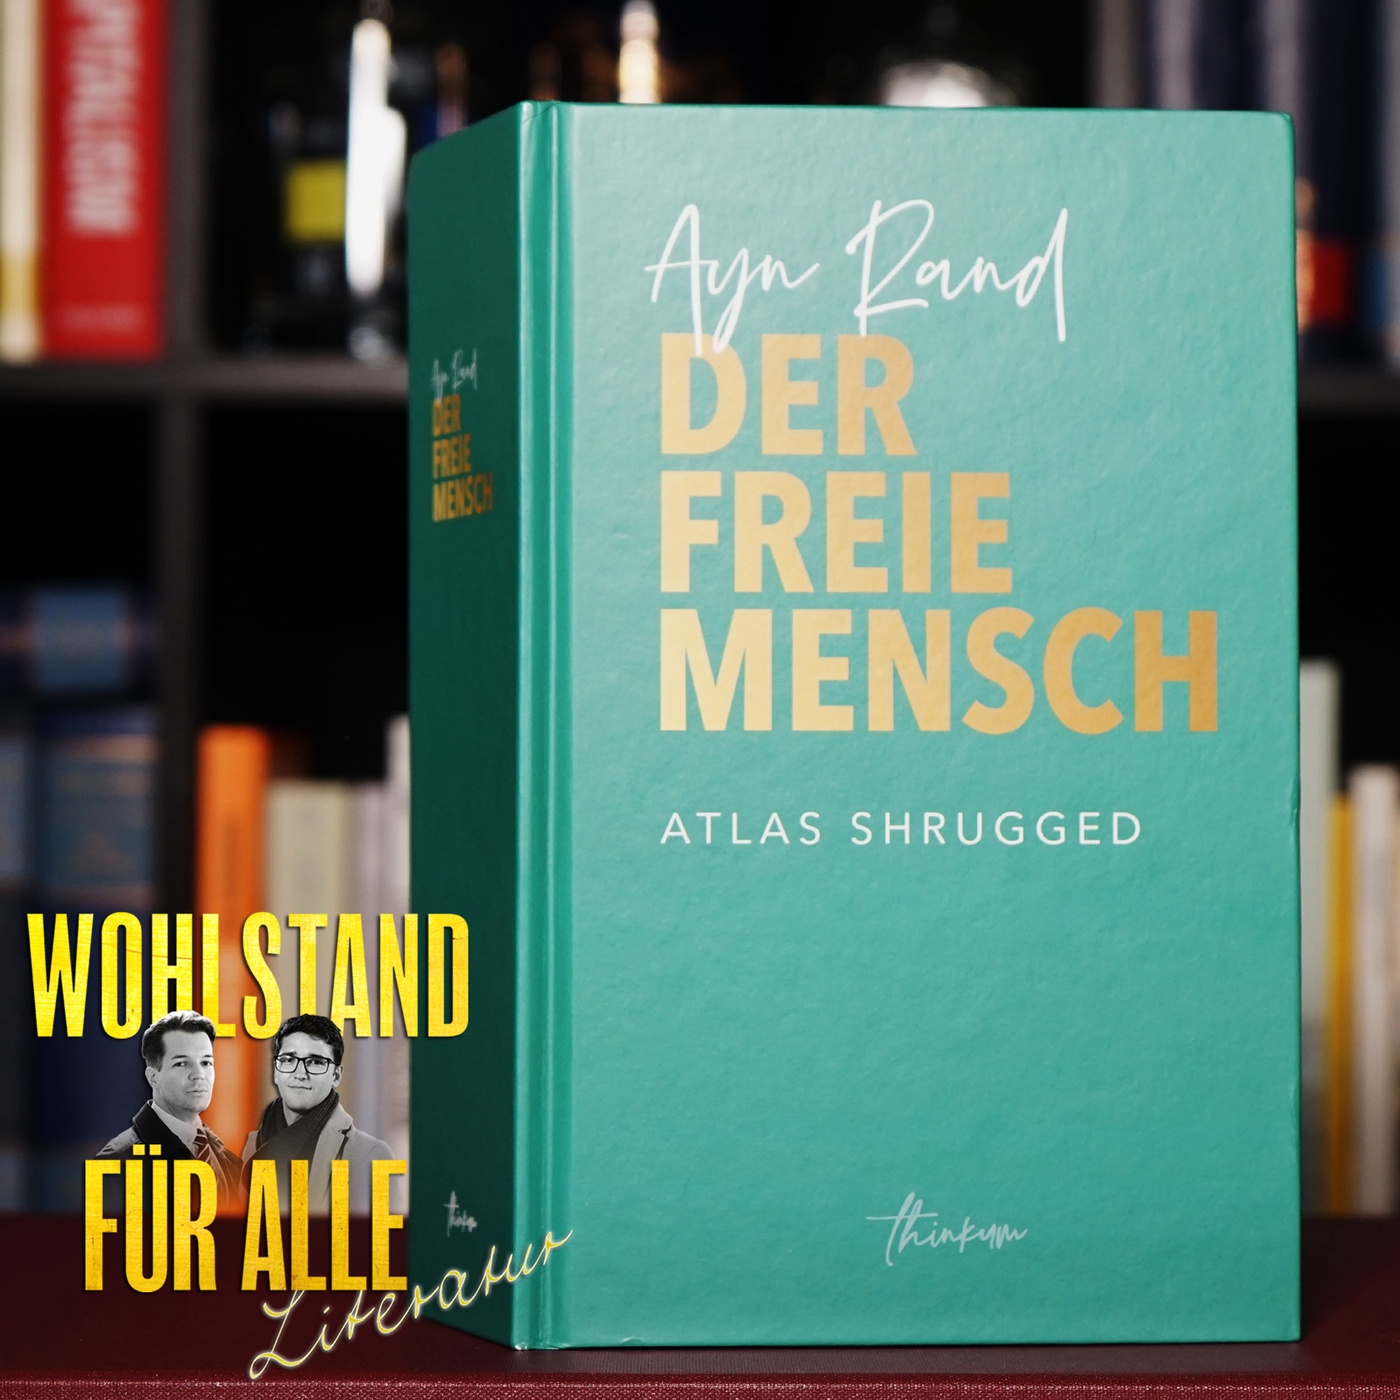 Literatur #36: ATLAS SHRUGGED – Ayn Rands Vermächtnis